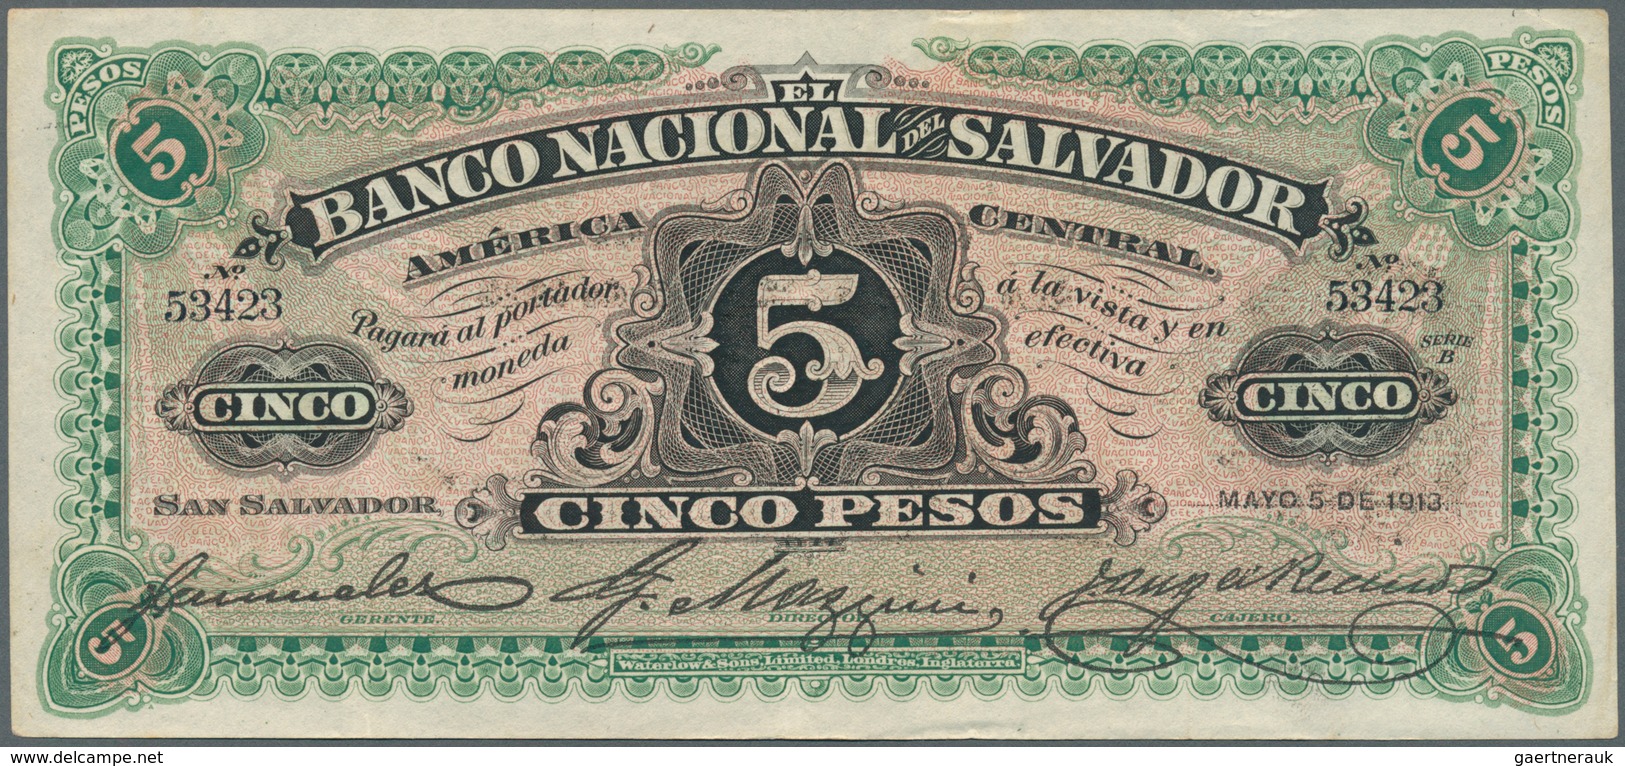 El Salvador: Banco Nacional Del Salvador 5 Pesos 1913, P.S162c, Some Soft Vertical Folds And Minor O - El Salvador